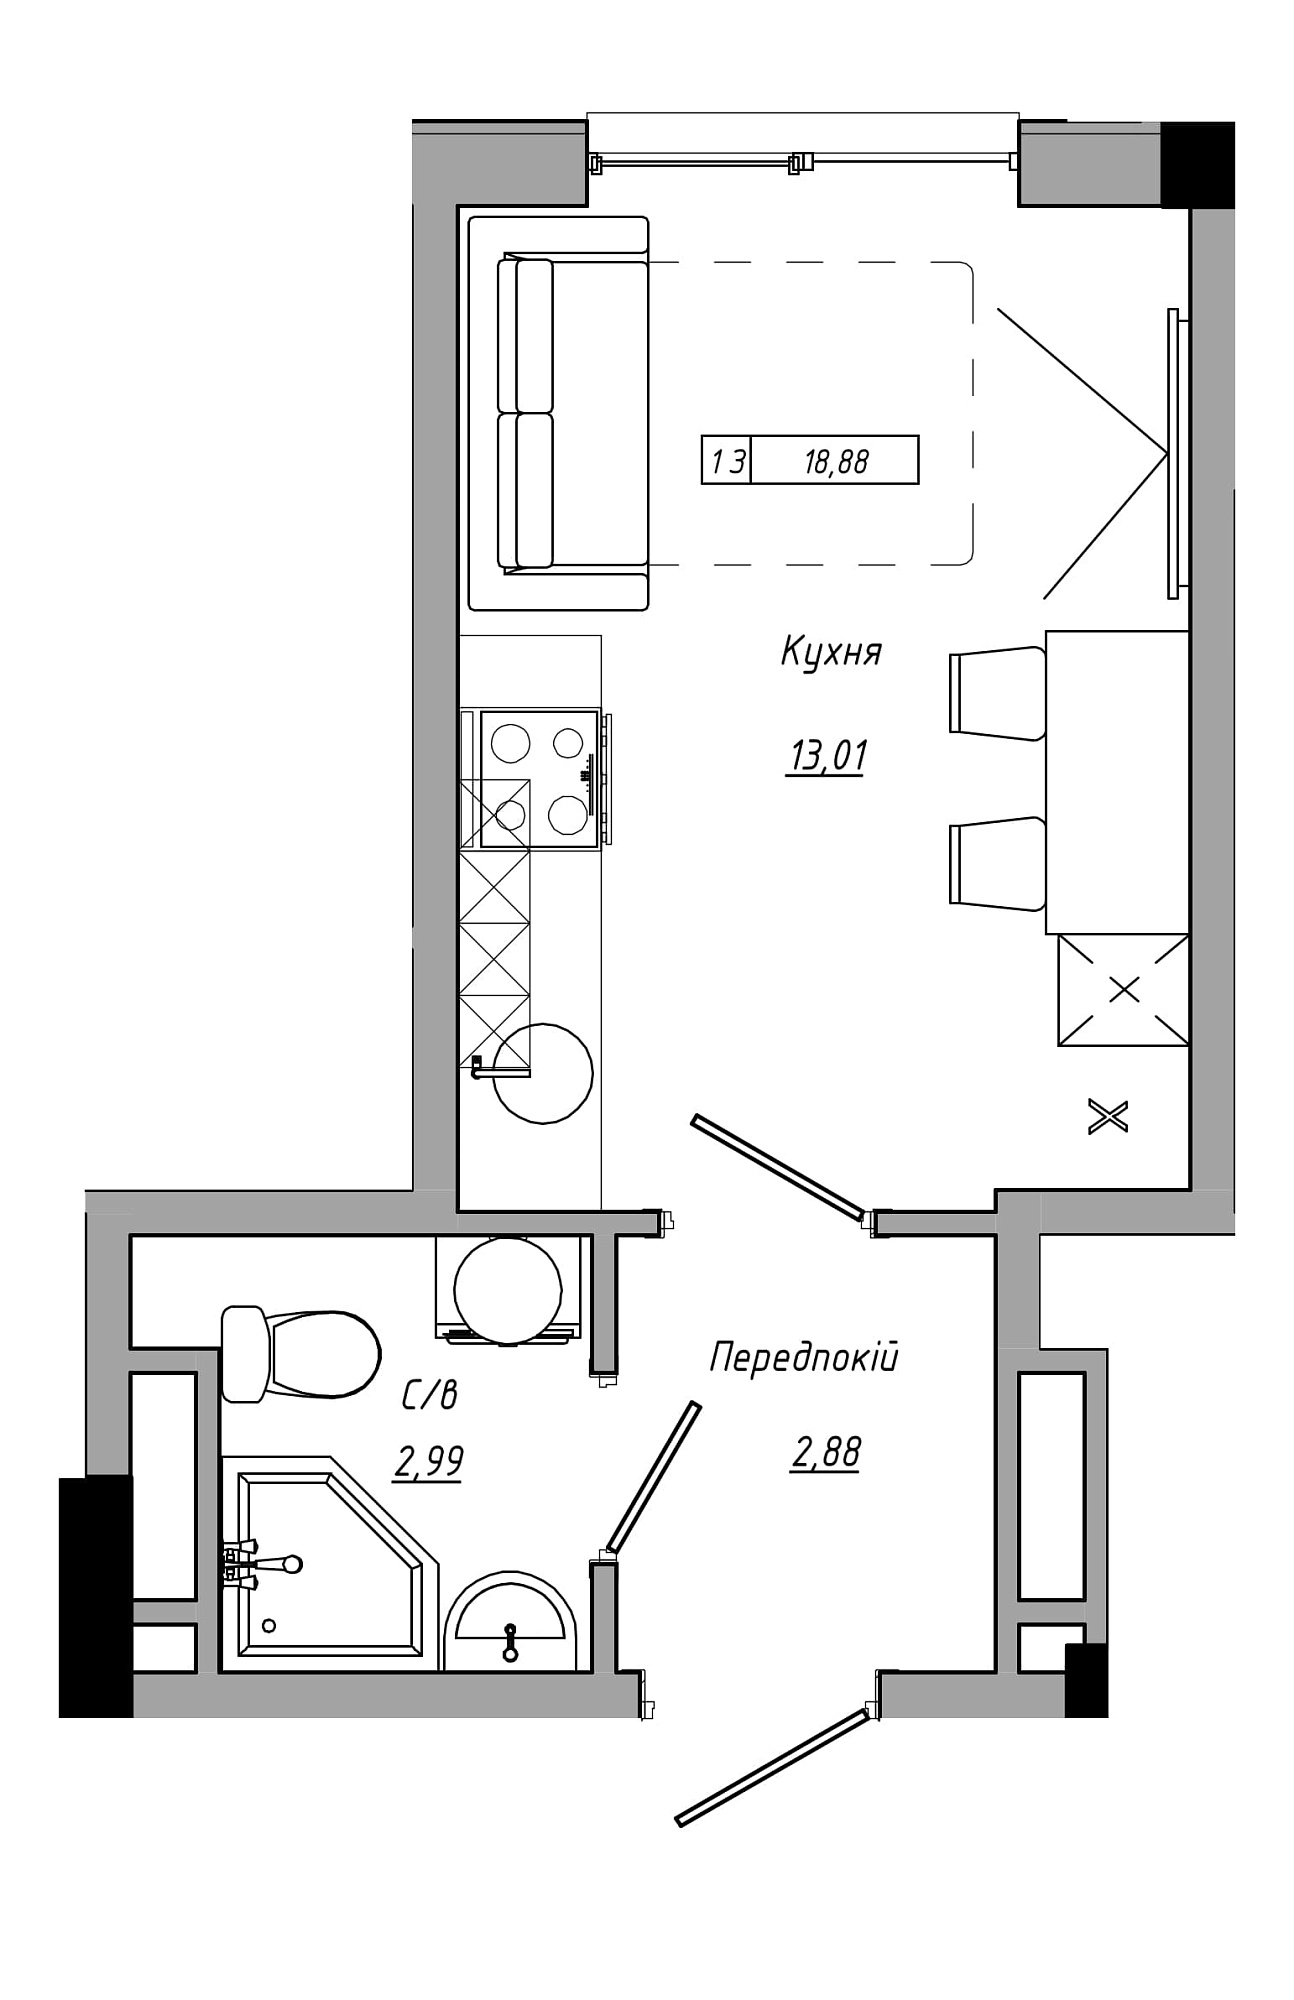 Планування Smart-квартира площею 18.88м2, AB-21-06/00011.